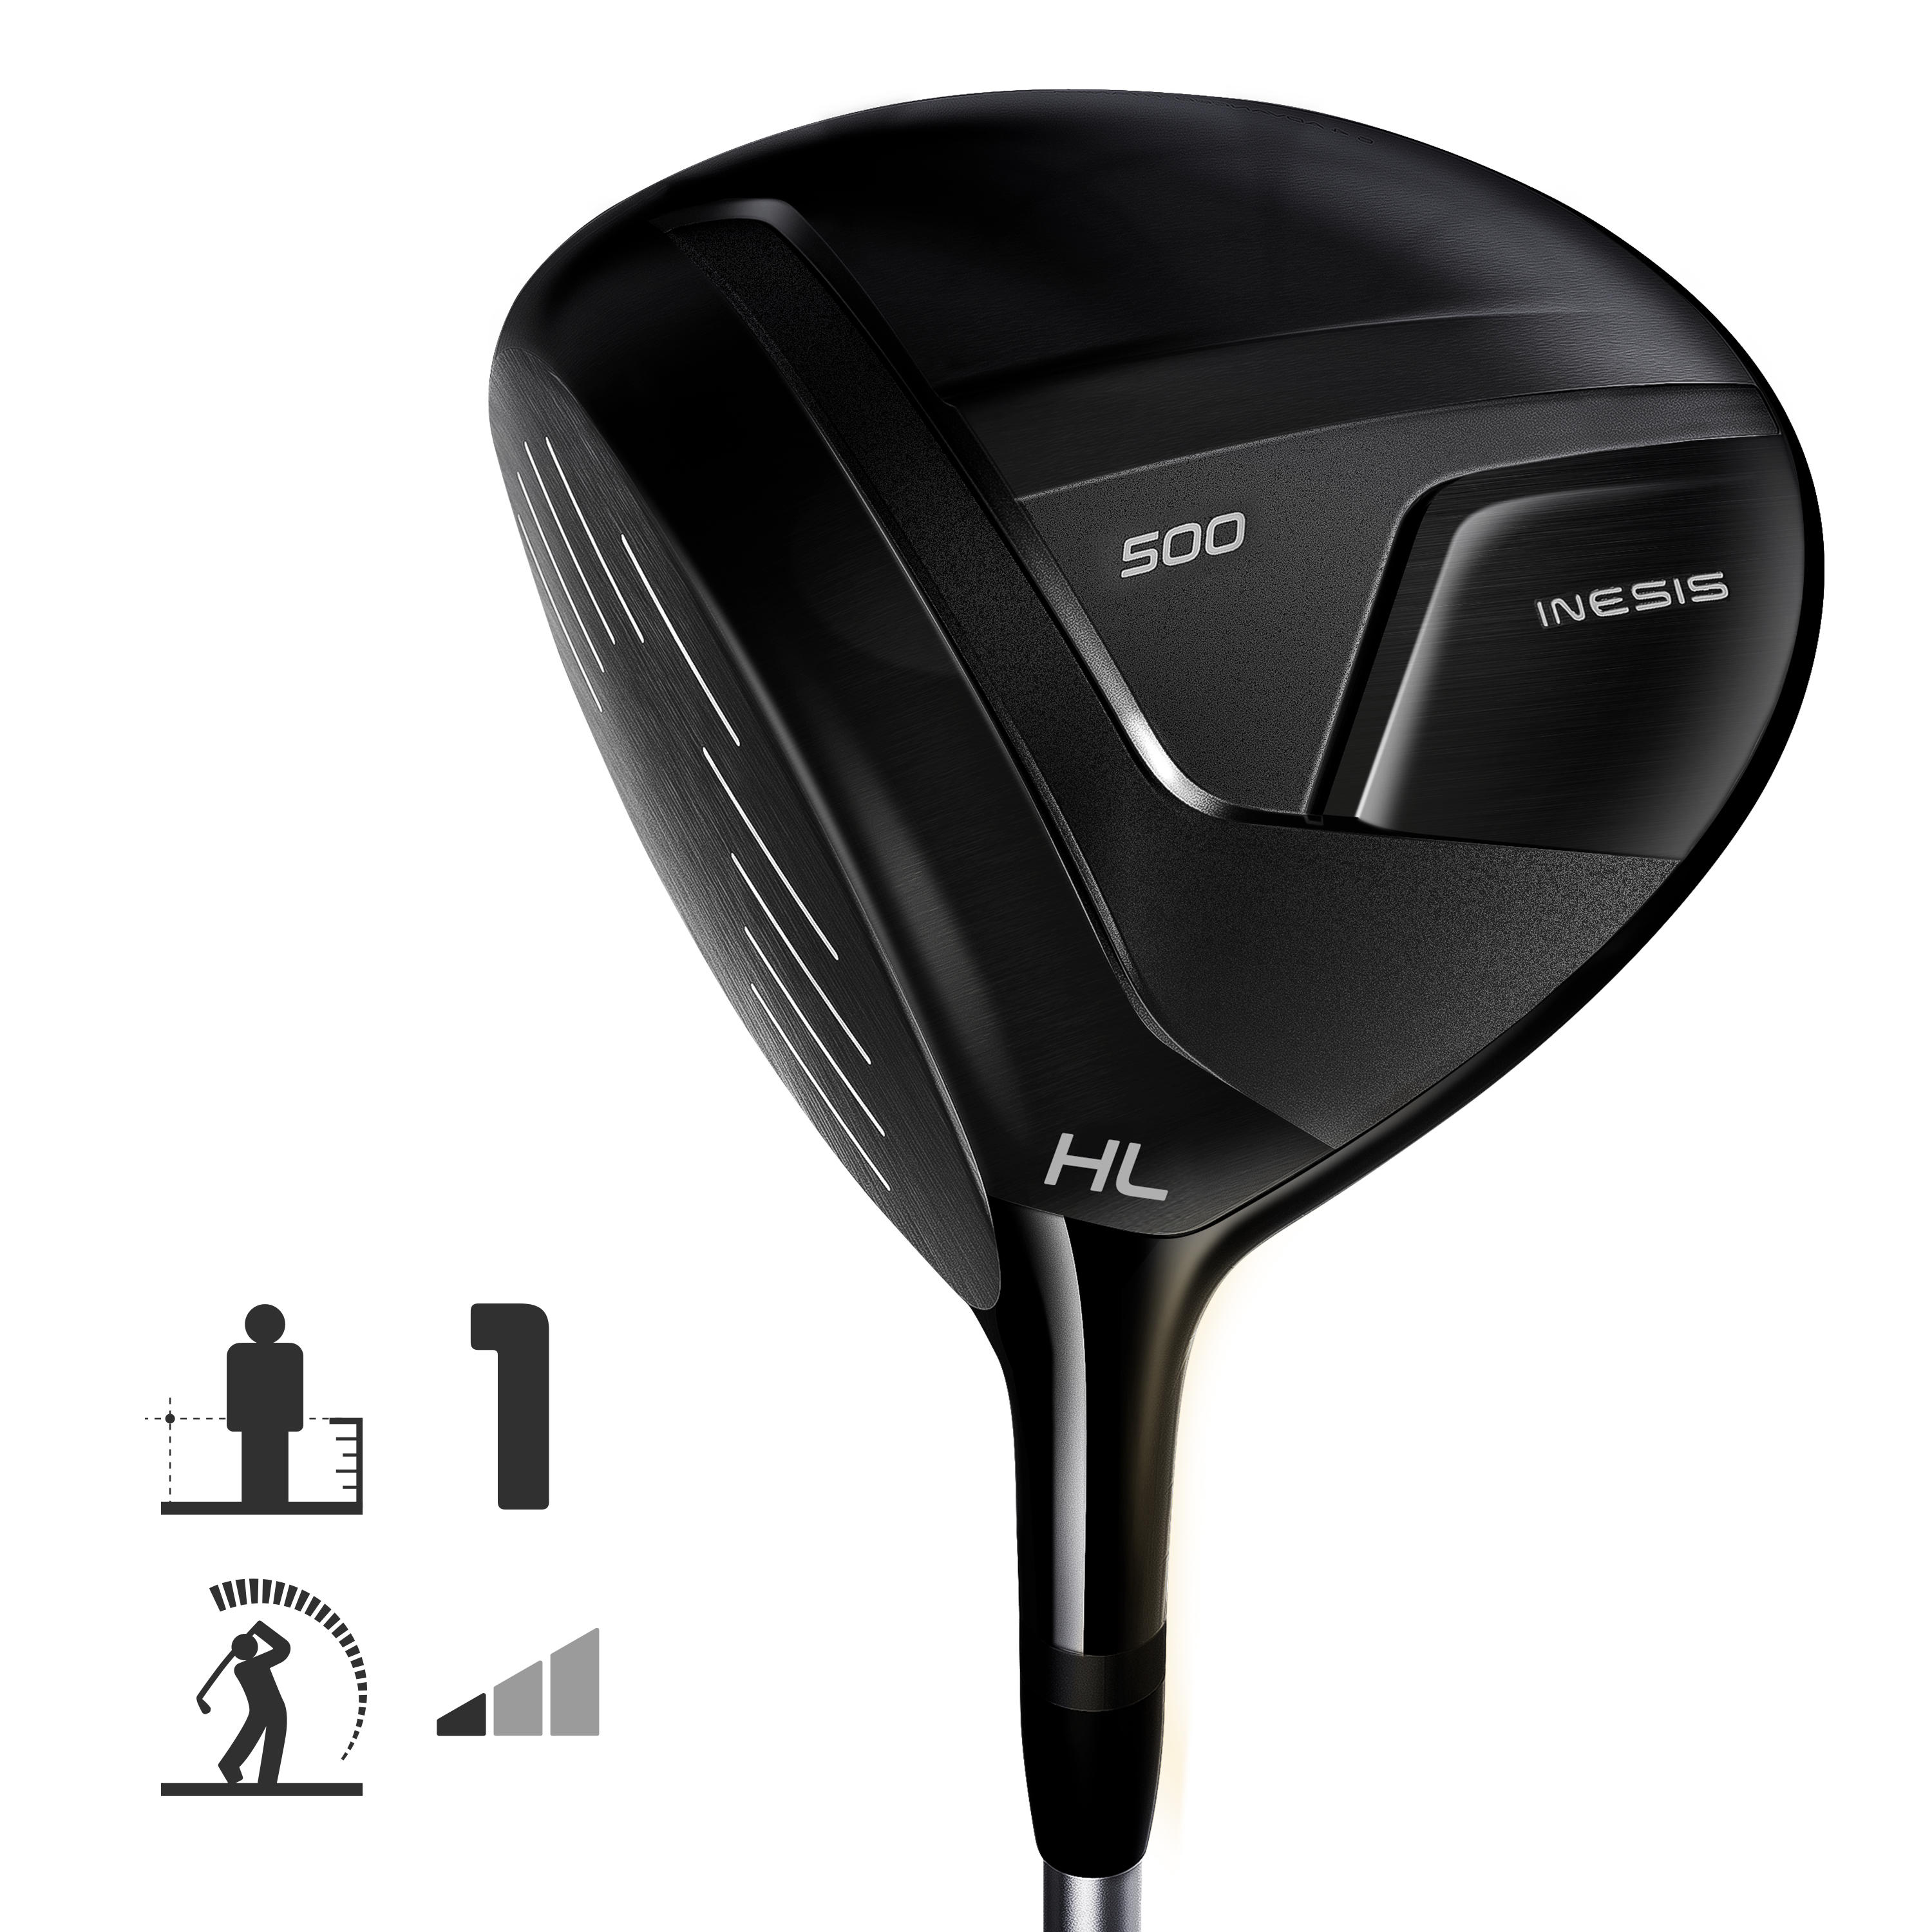 Crosă hibrid Golf XR OS 500 dreptaci mărimea 1 viteză mică decathlon.ro  Crose golf